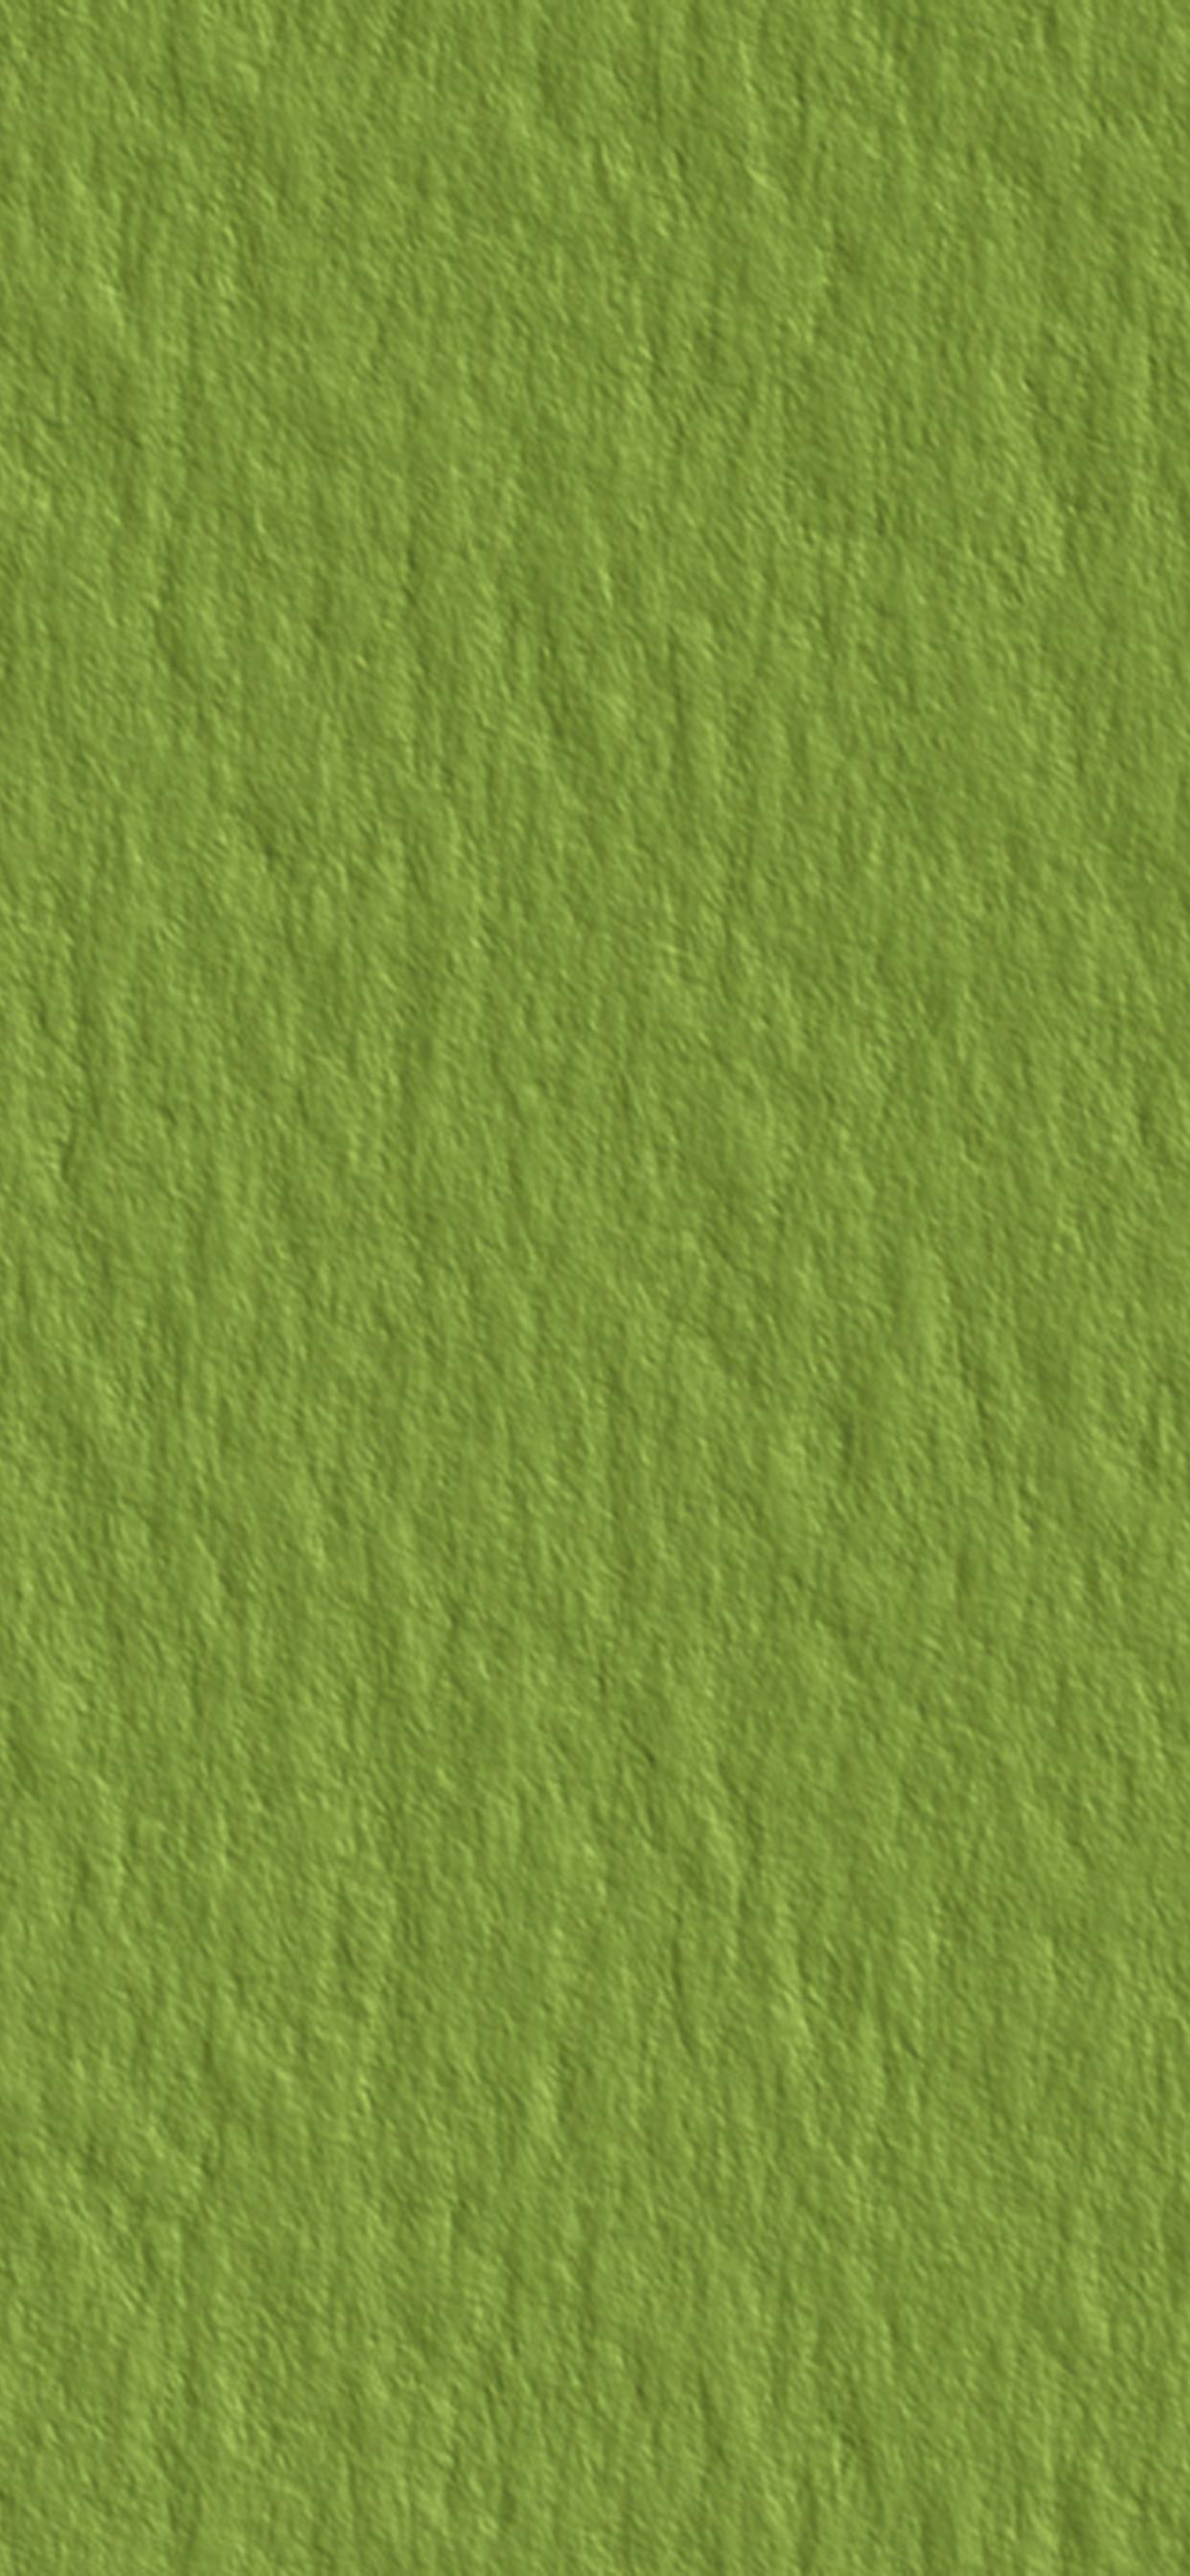 荧光绿色壁纸纯色无字图片